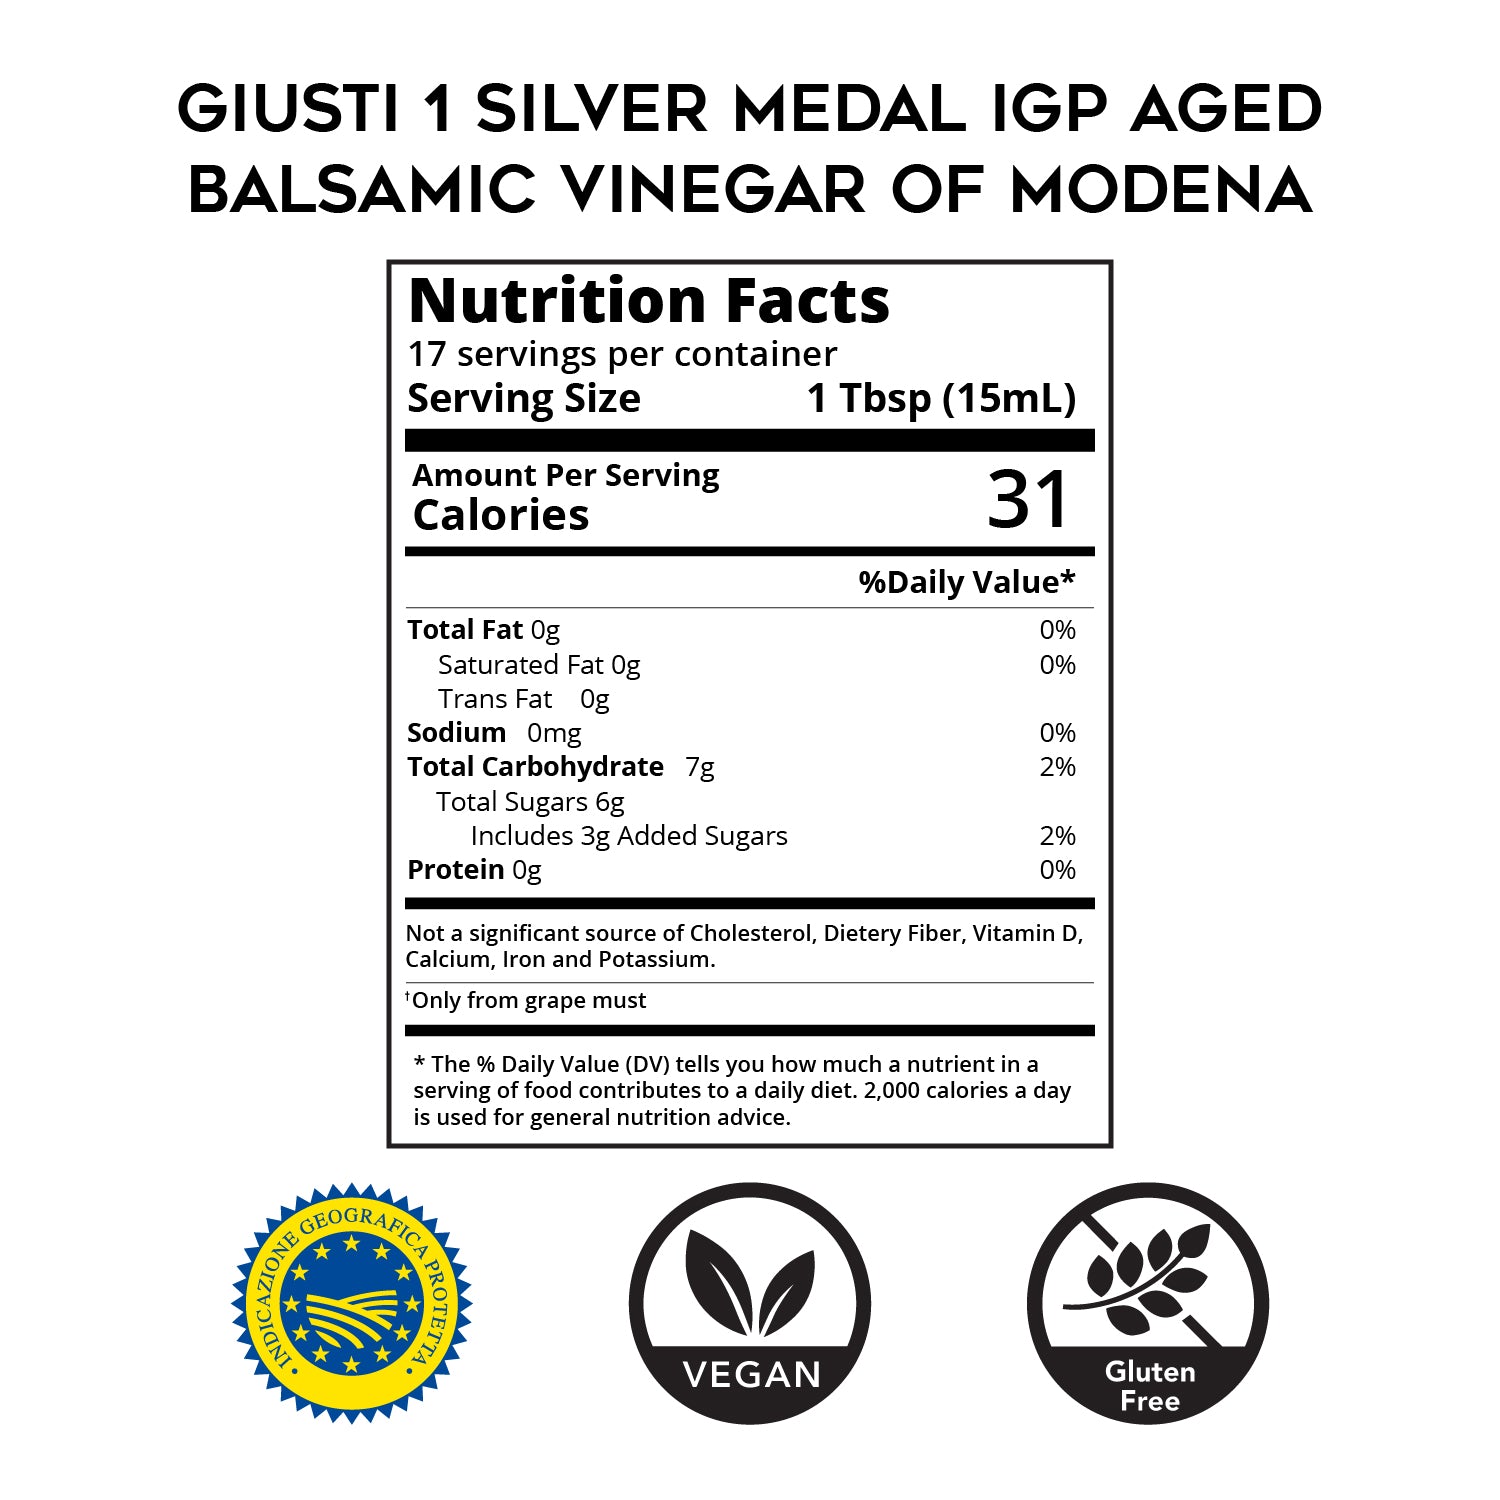 Aged (6yr) Balsamic Vinegar of Modena - IGP - 1 Silver Medal- by Giusti